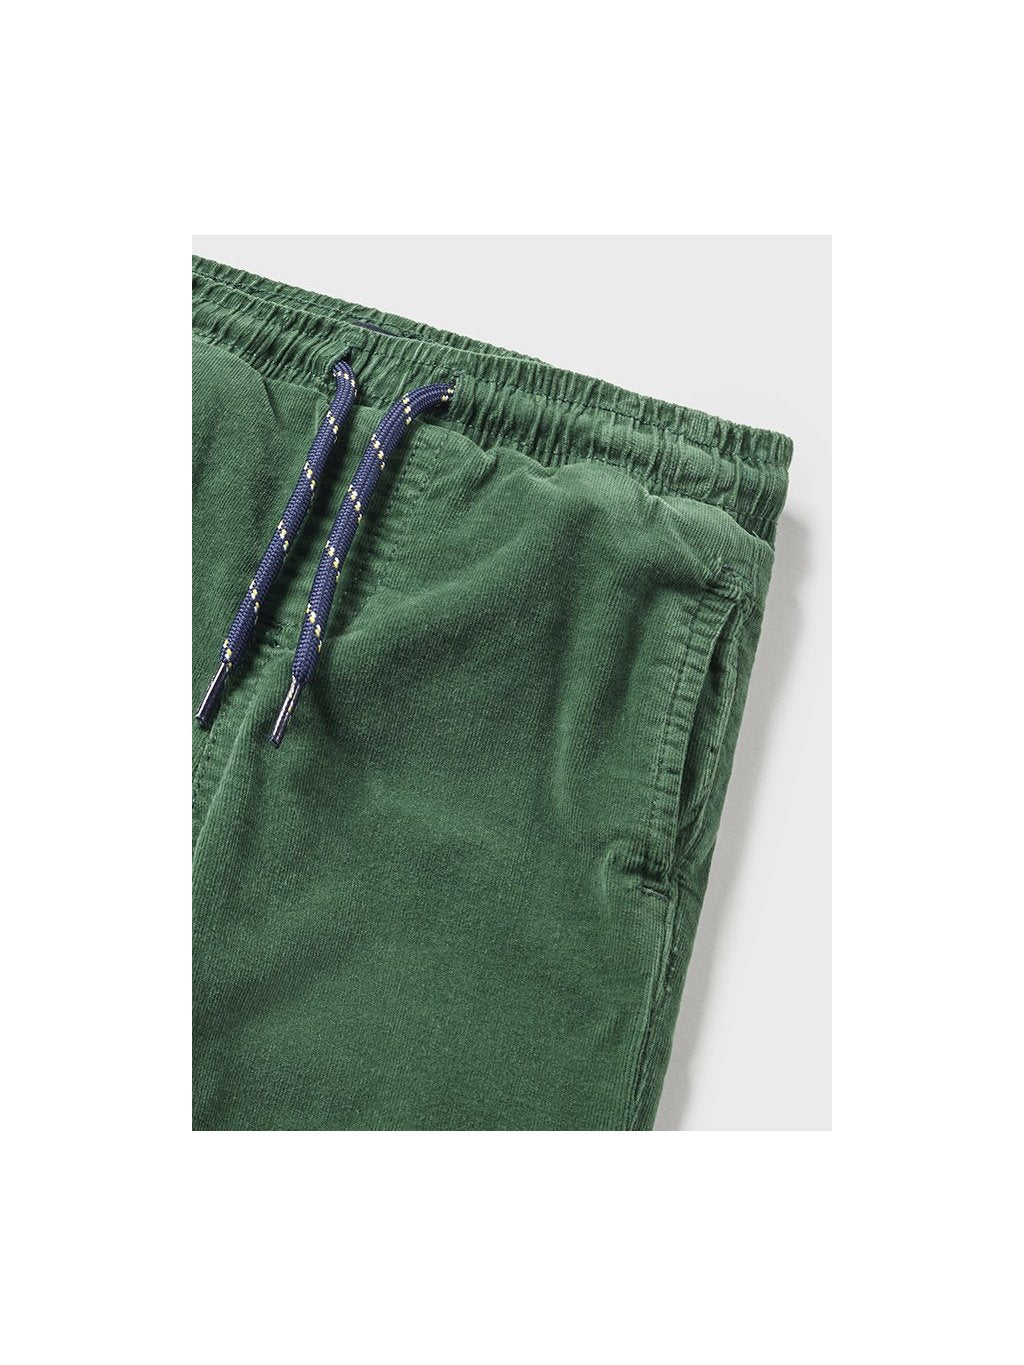 GREEN STRETCH CORDUROY PANTS